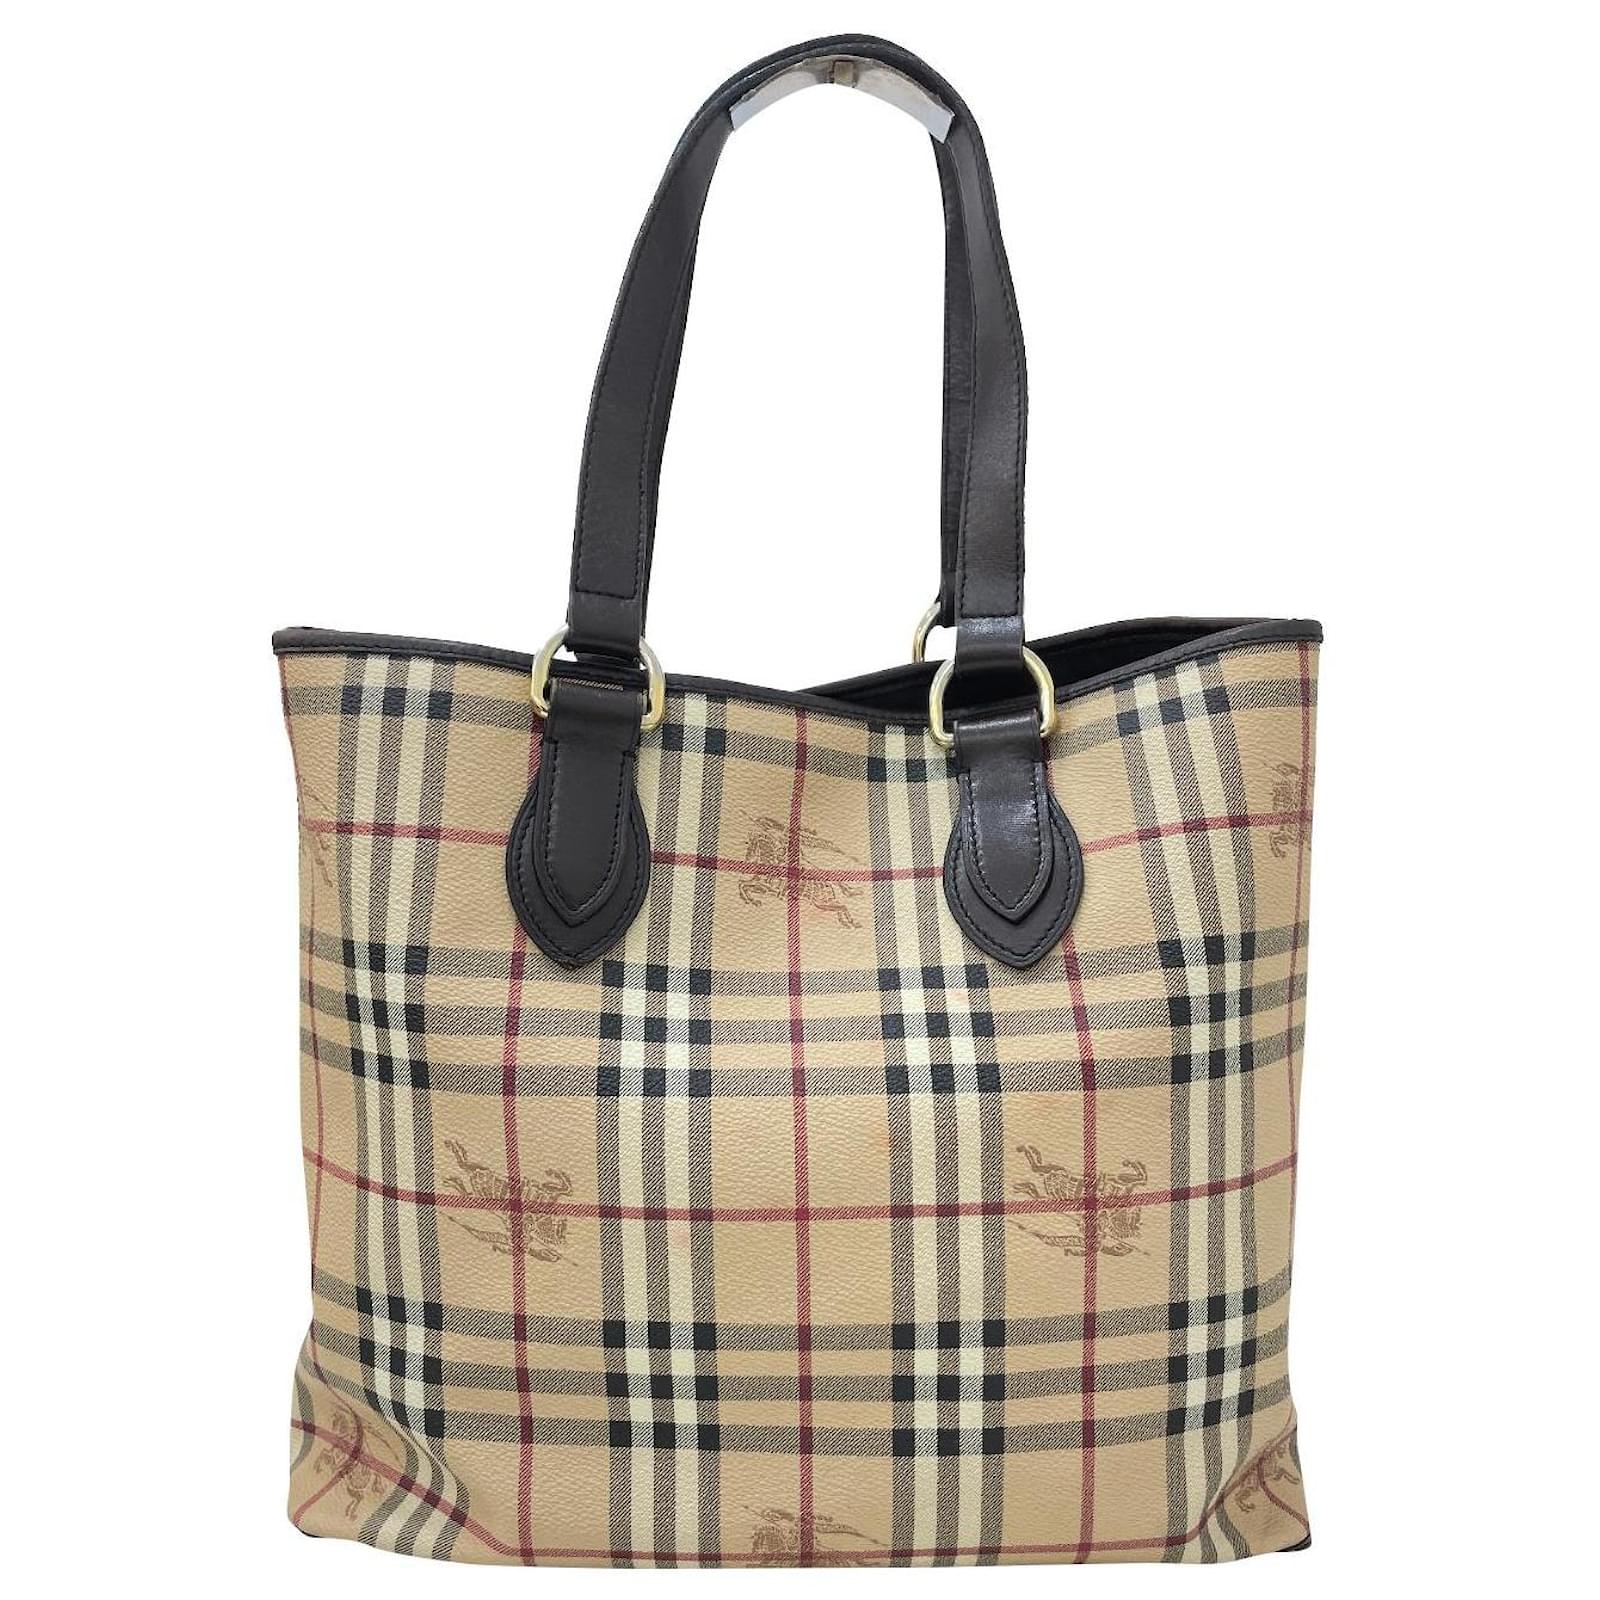 Old Burberry bag : r/handbags